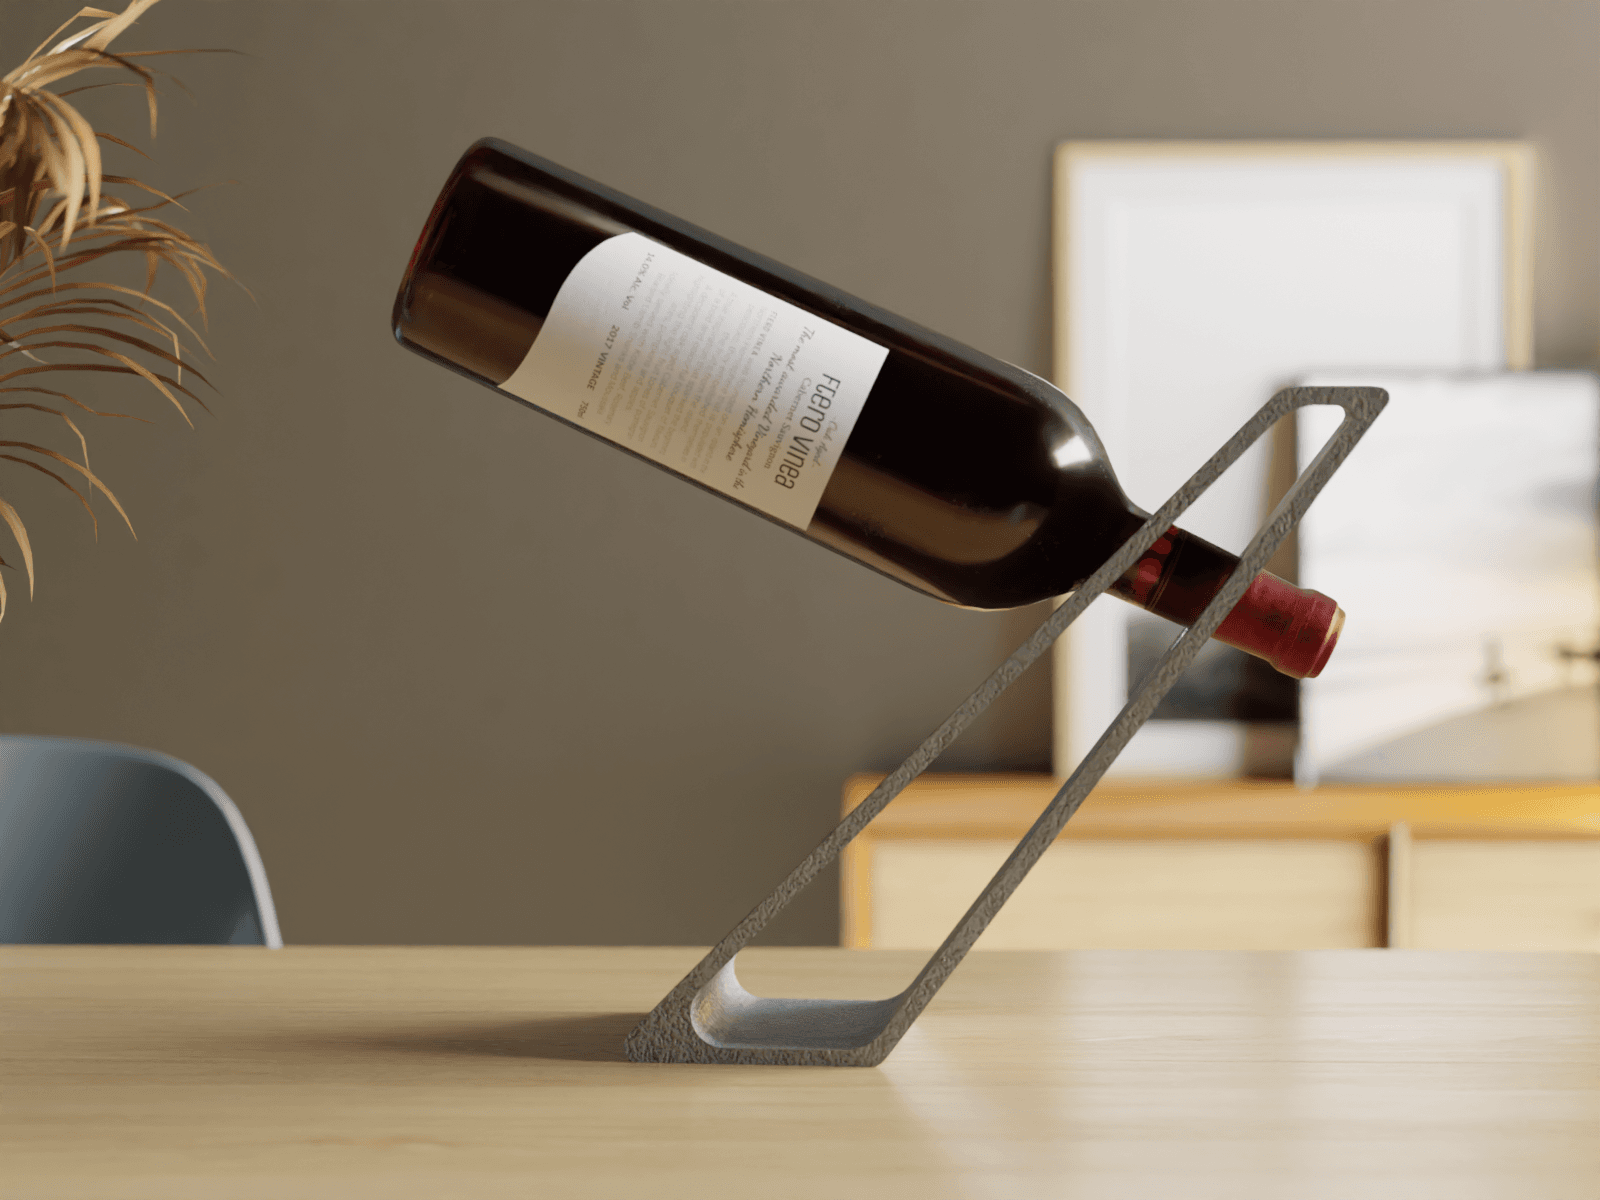 LevitaVin - The Gravity-Defying Wine Holder 3d model